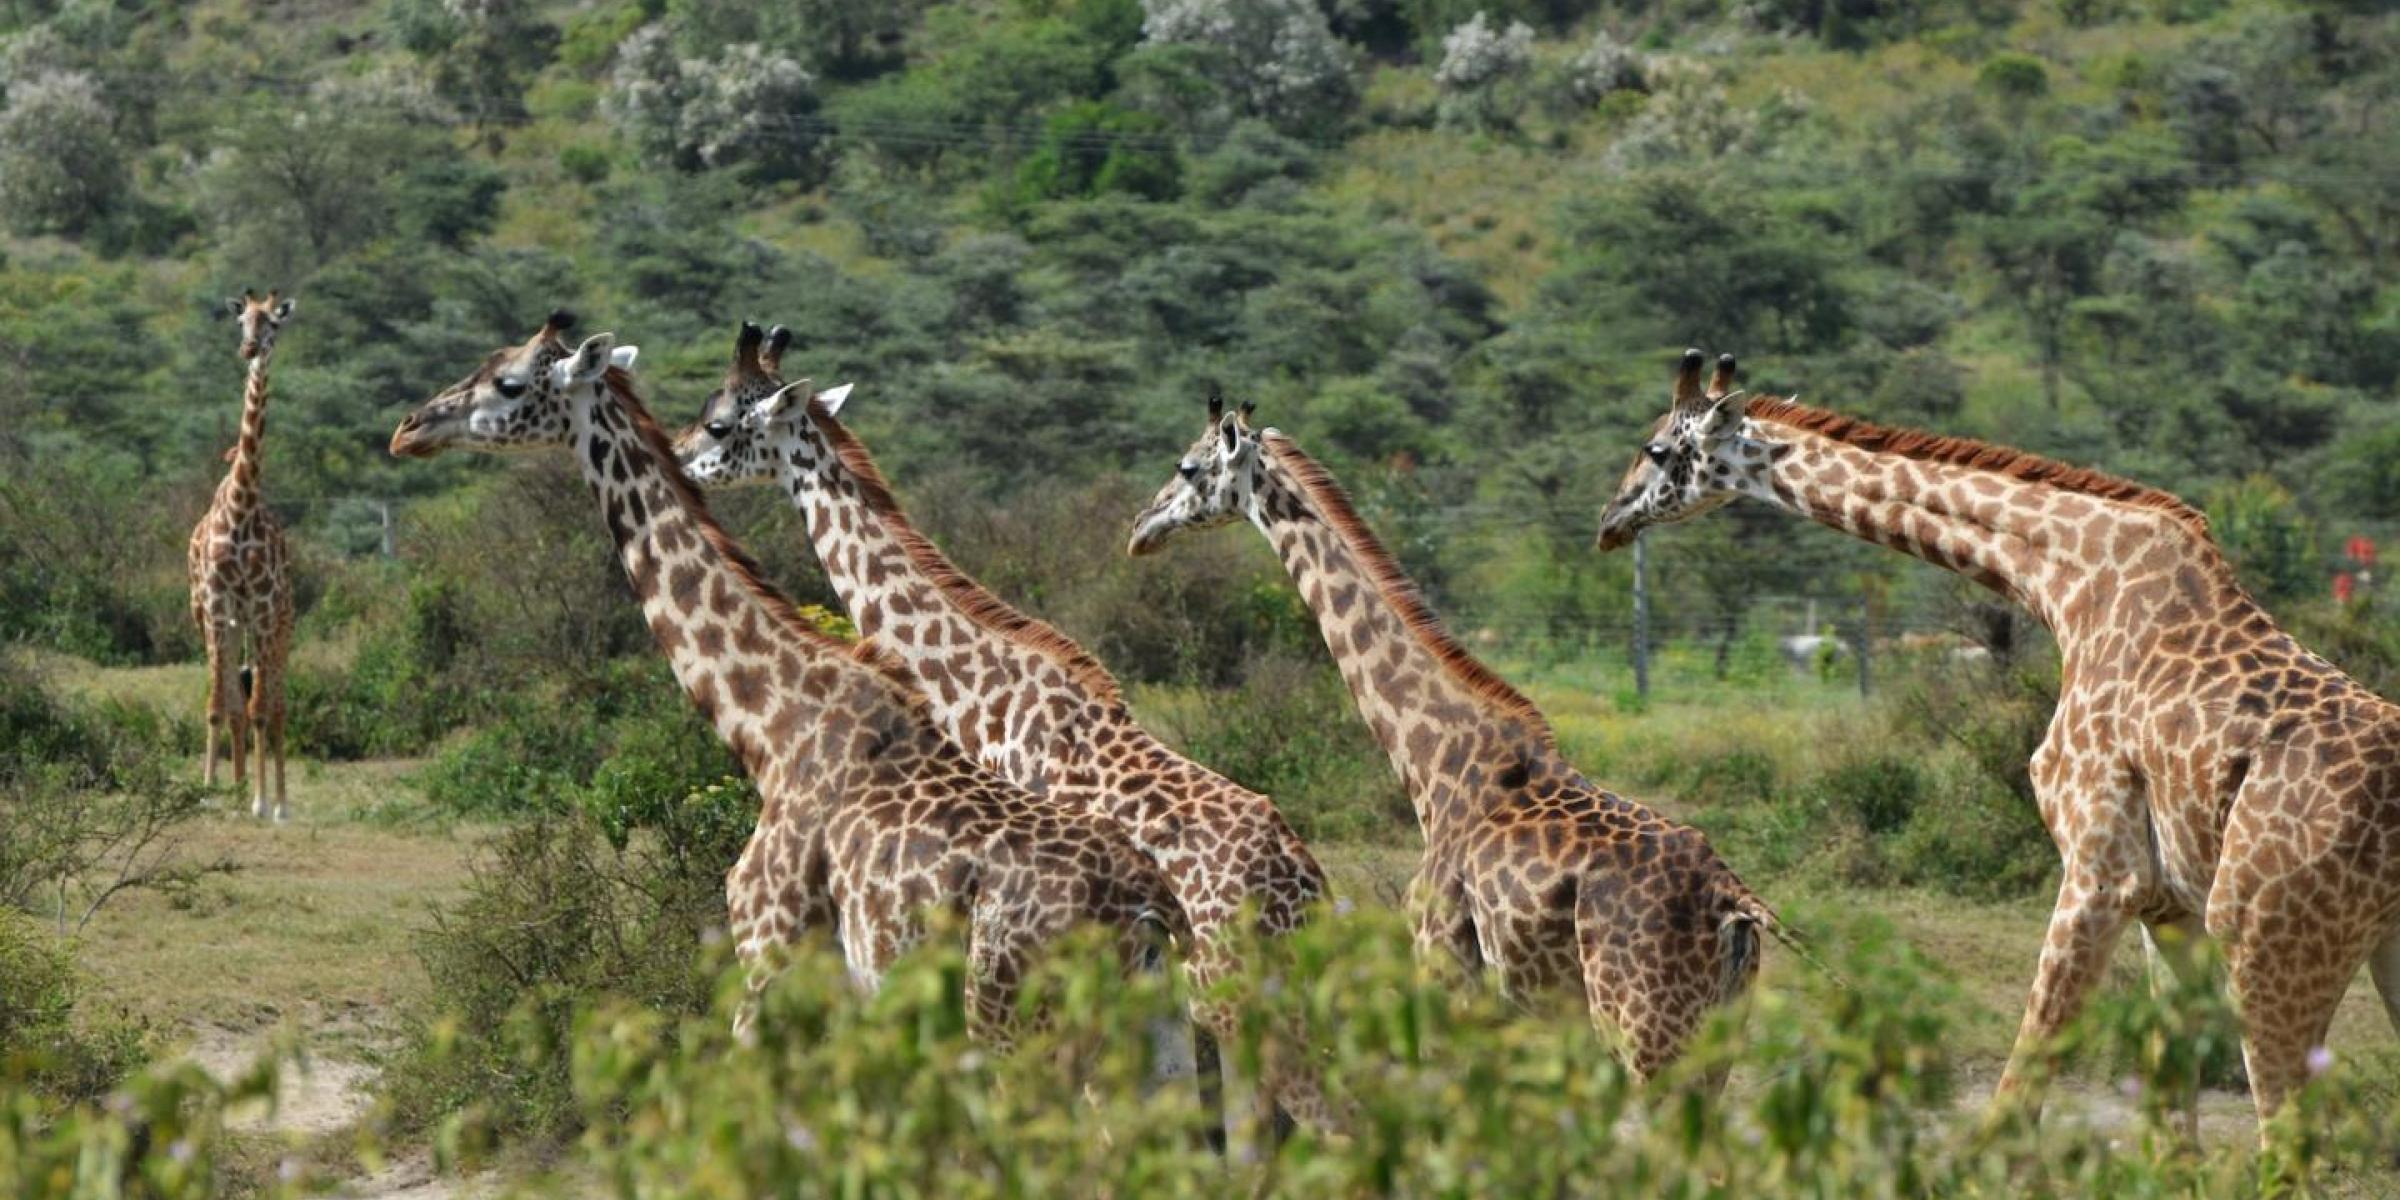 Reisearten, Reisenthemen  und Reisetypen auf Global-Adventures: Sehr beliebt sind Safaris um Giraffen und andere Tiere zu beobachtenÜberblick über Reisearten, Reisethemen und Reisetypen